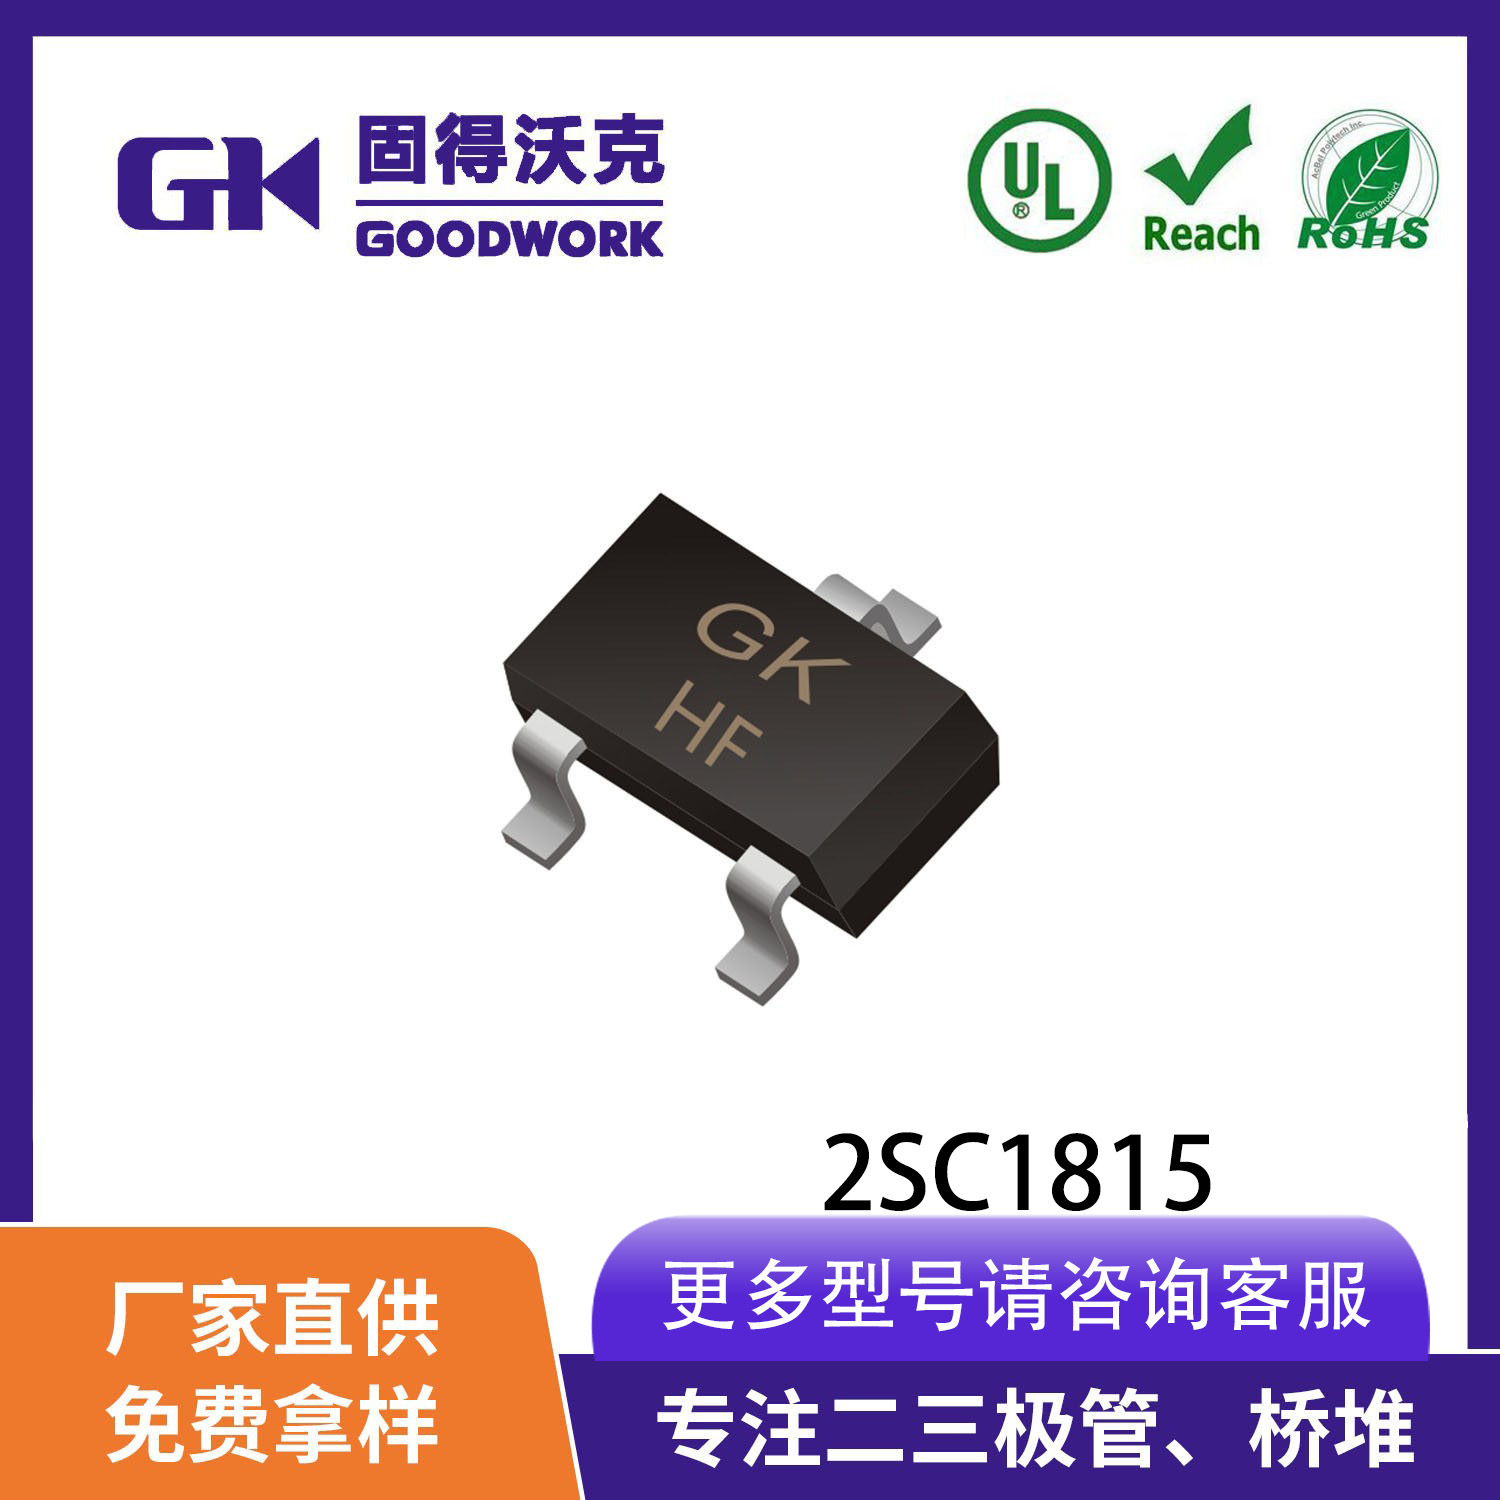 厂家直销GK品牌HF 2SC1815 SOT23封装 0.15A60V 贴片NPN晶体管